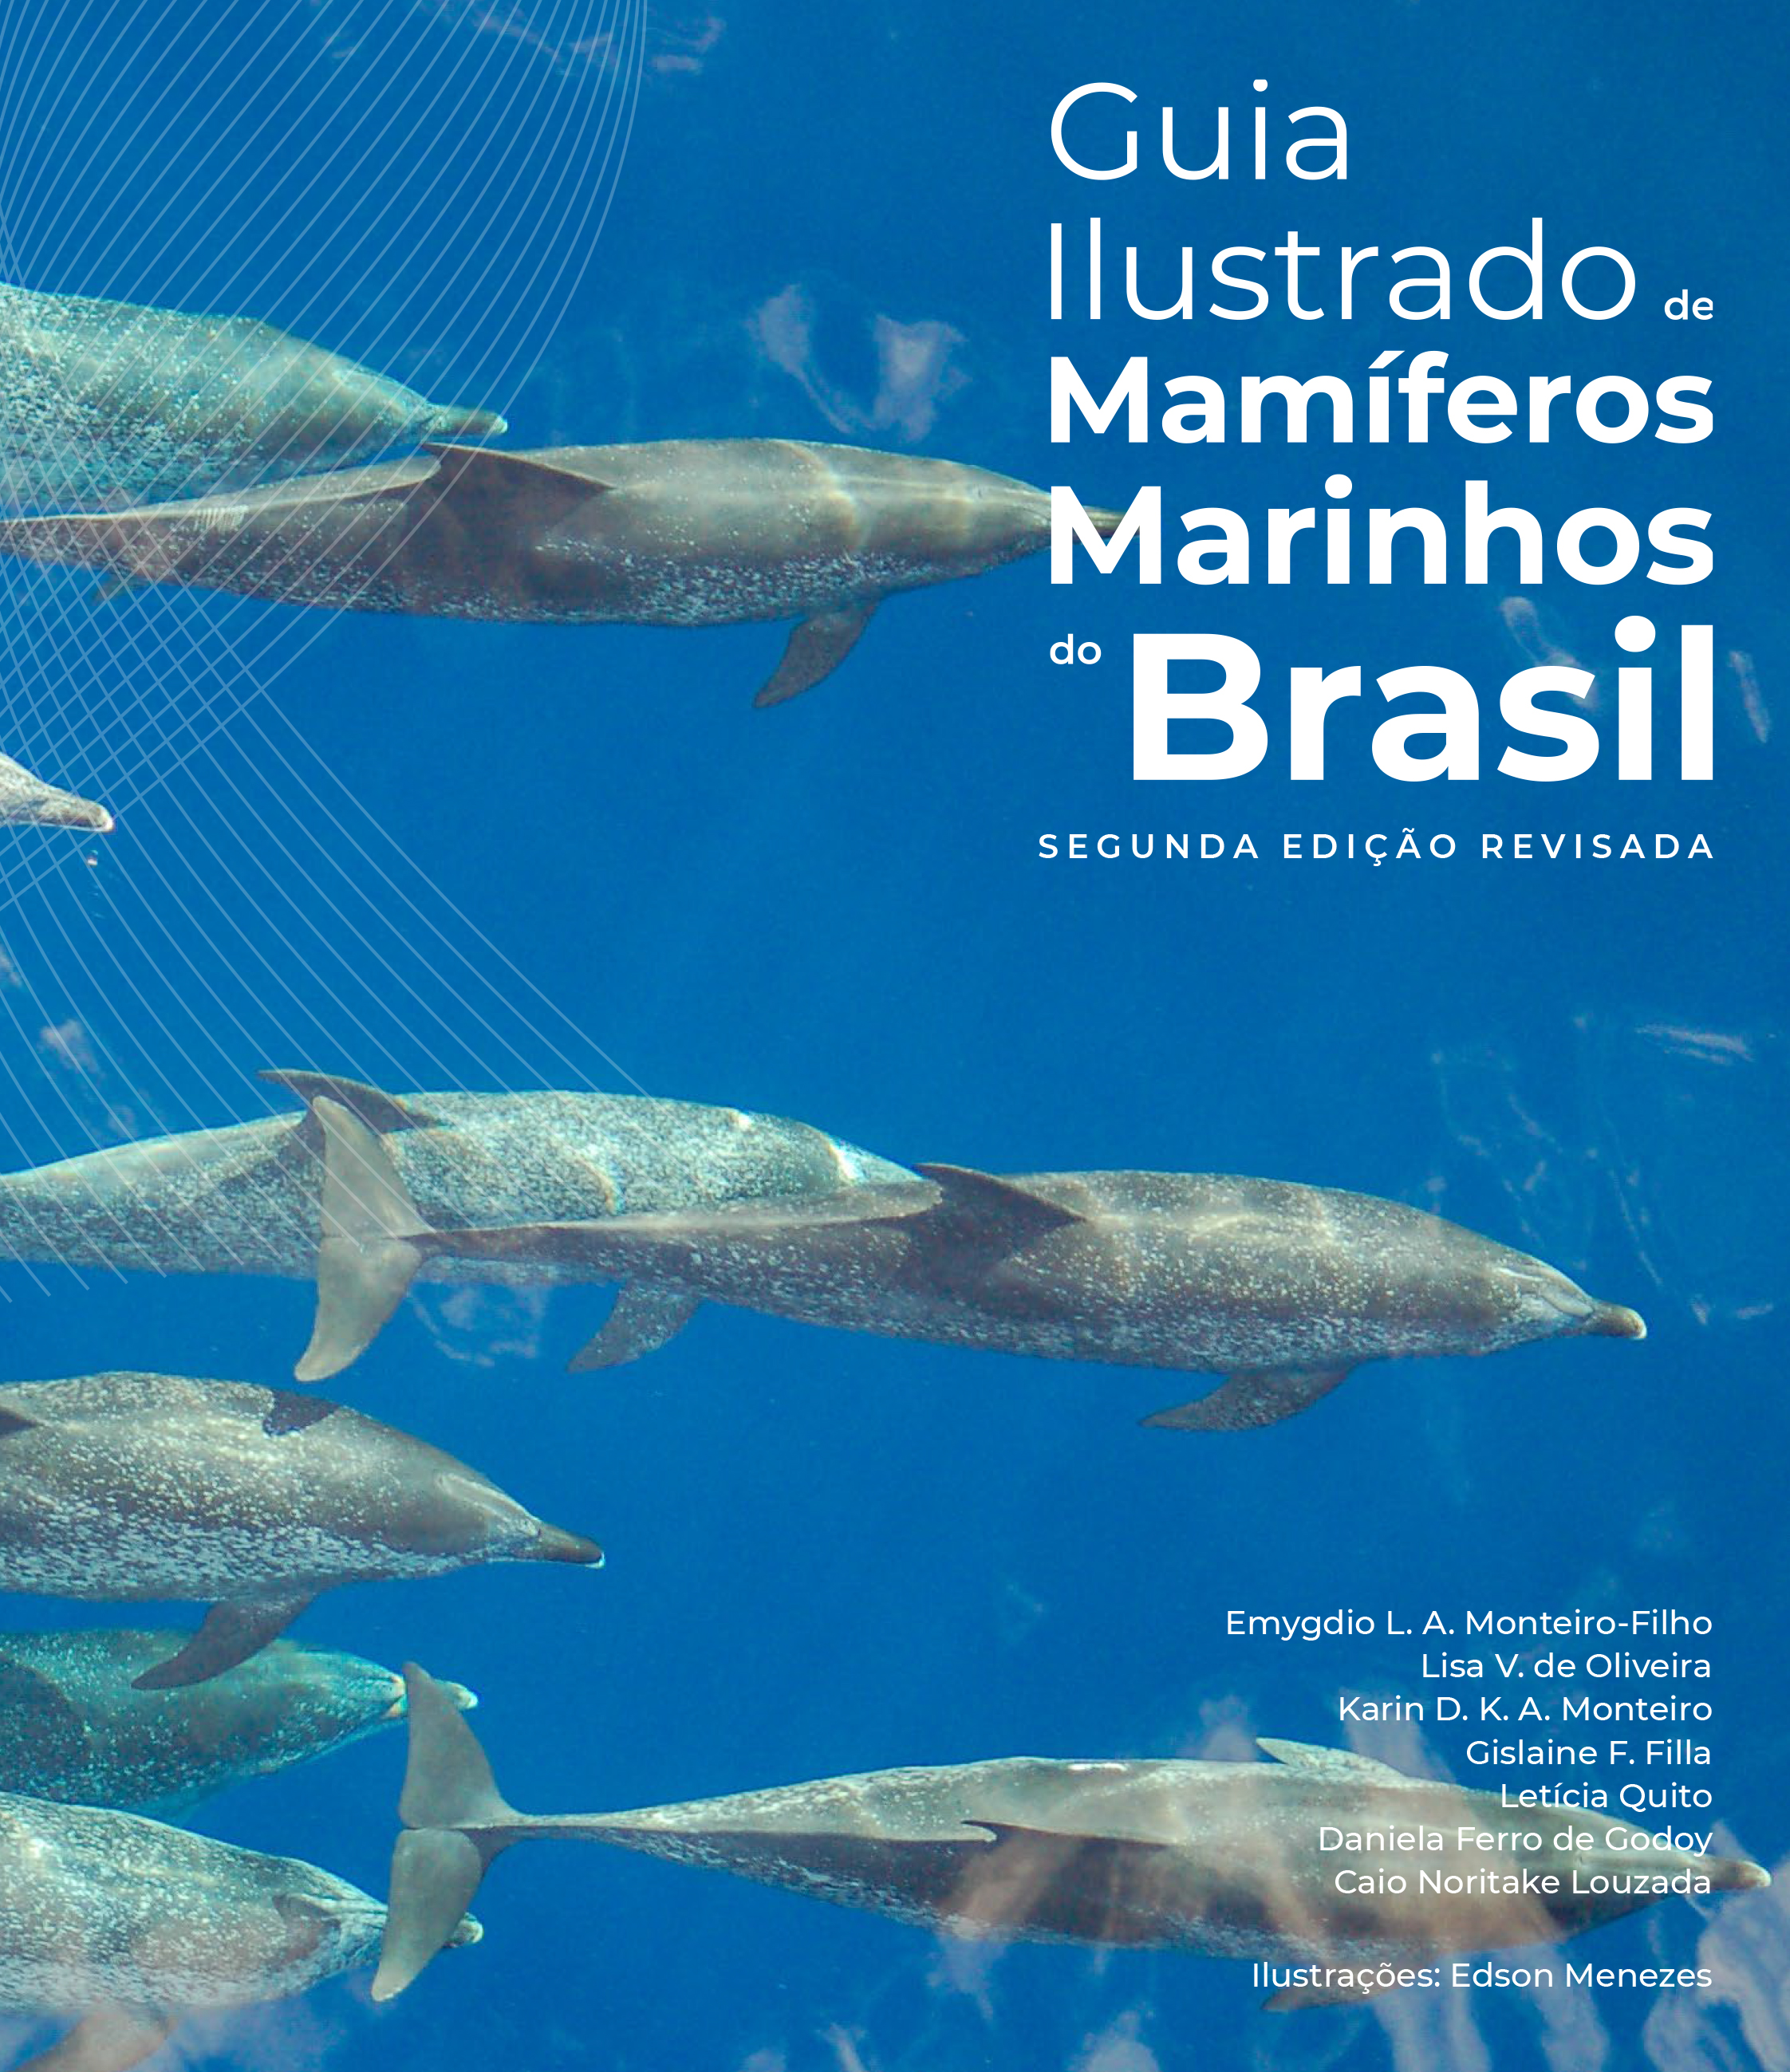 Guia Ilustrado de Mamíferos Marinhos do Brasil – Segunda Edição